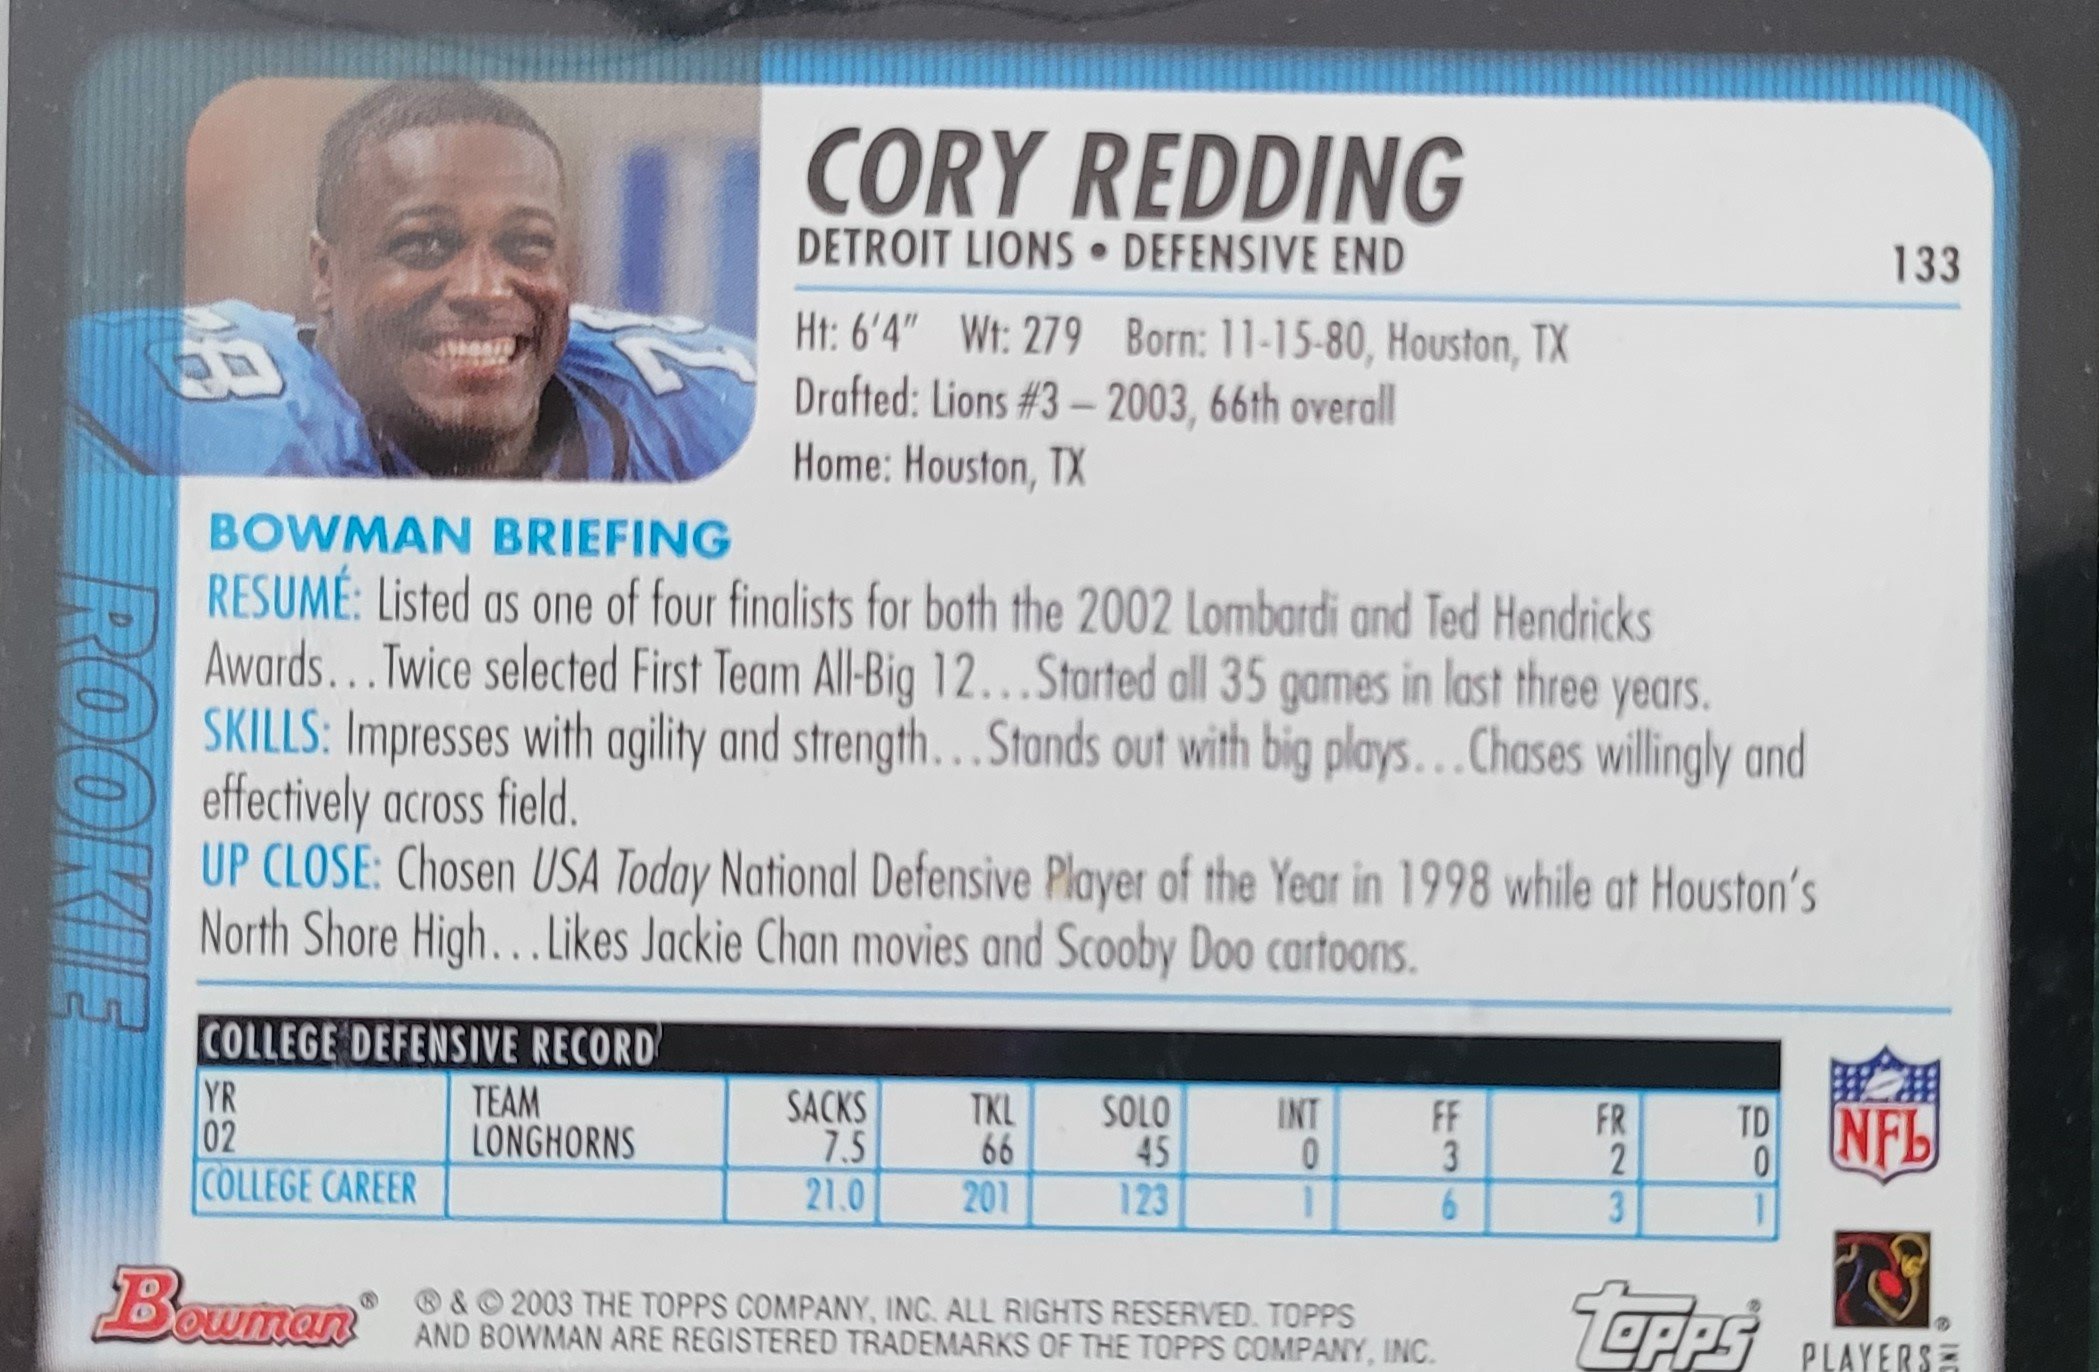 2002 Cory Redding